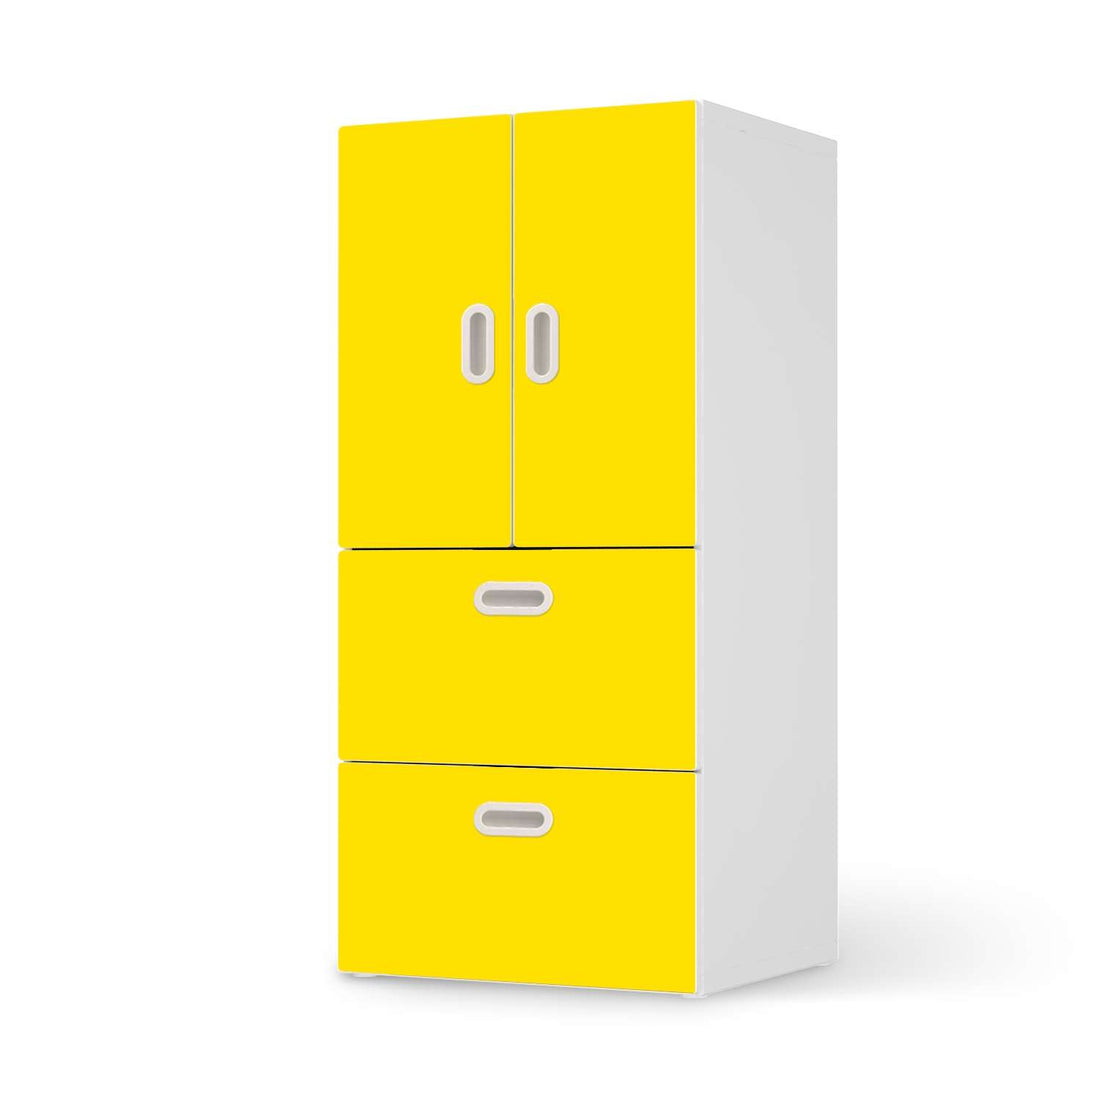 Möbelfolie Gelb Dark - IKEA Stuva / Fritids kombiniert - 2 Schubladen und 2 kleine Türen  - weiss